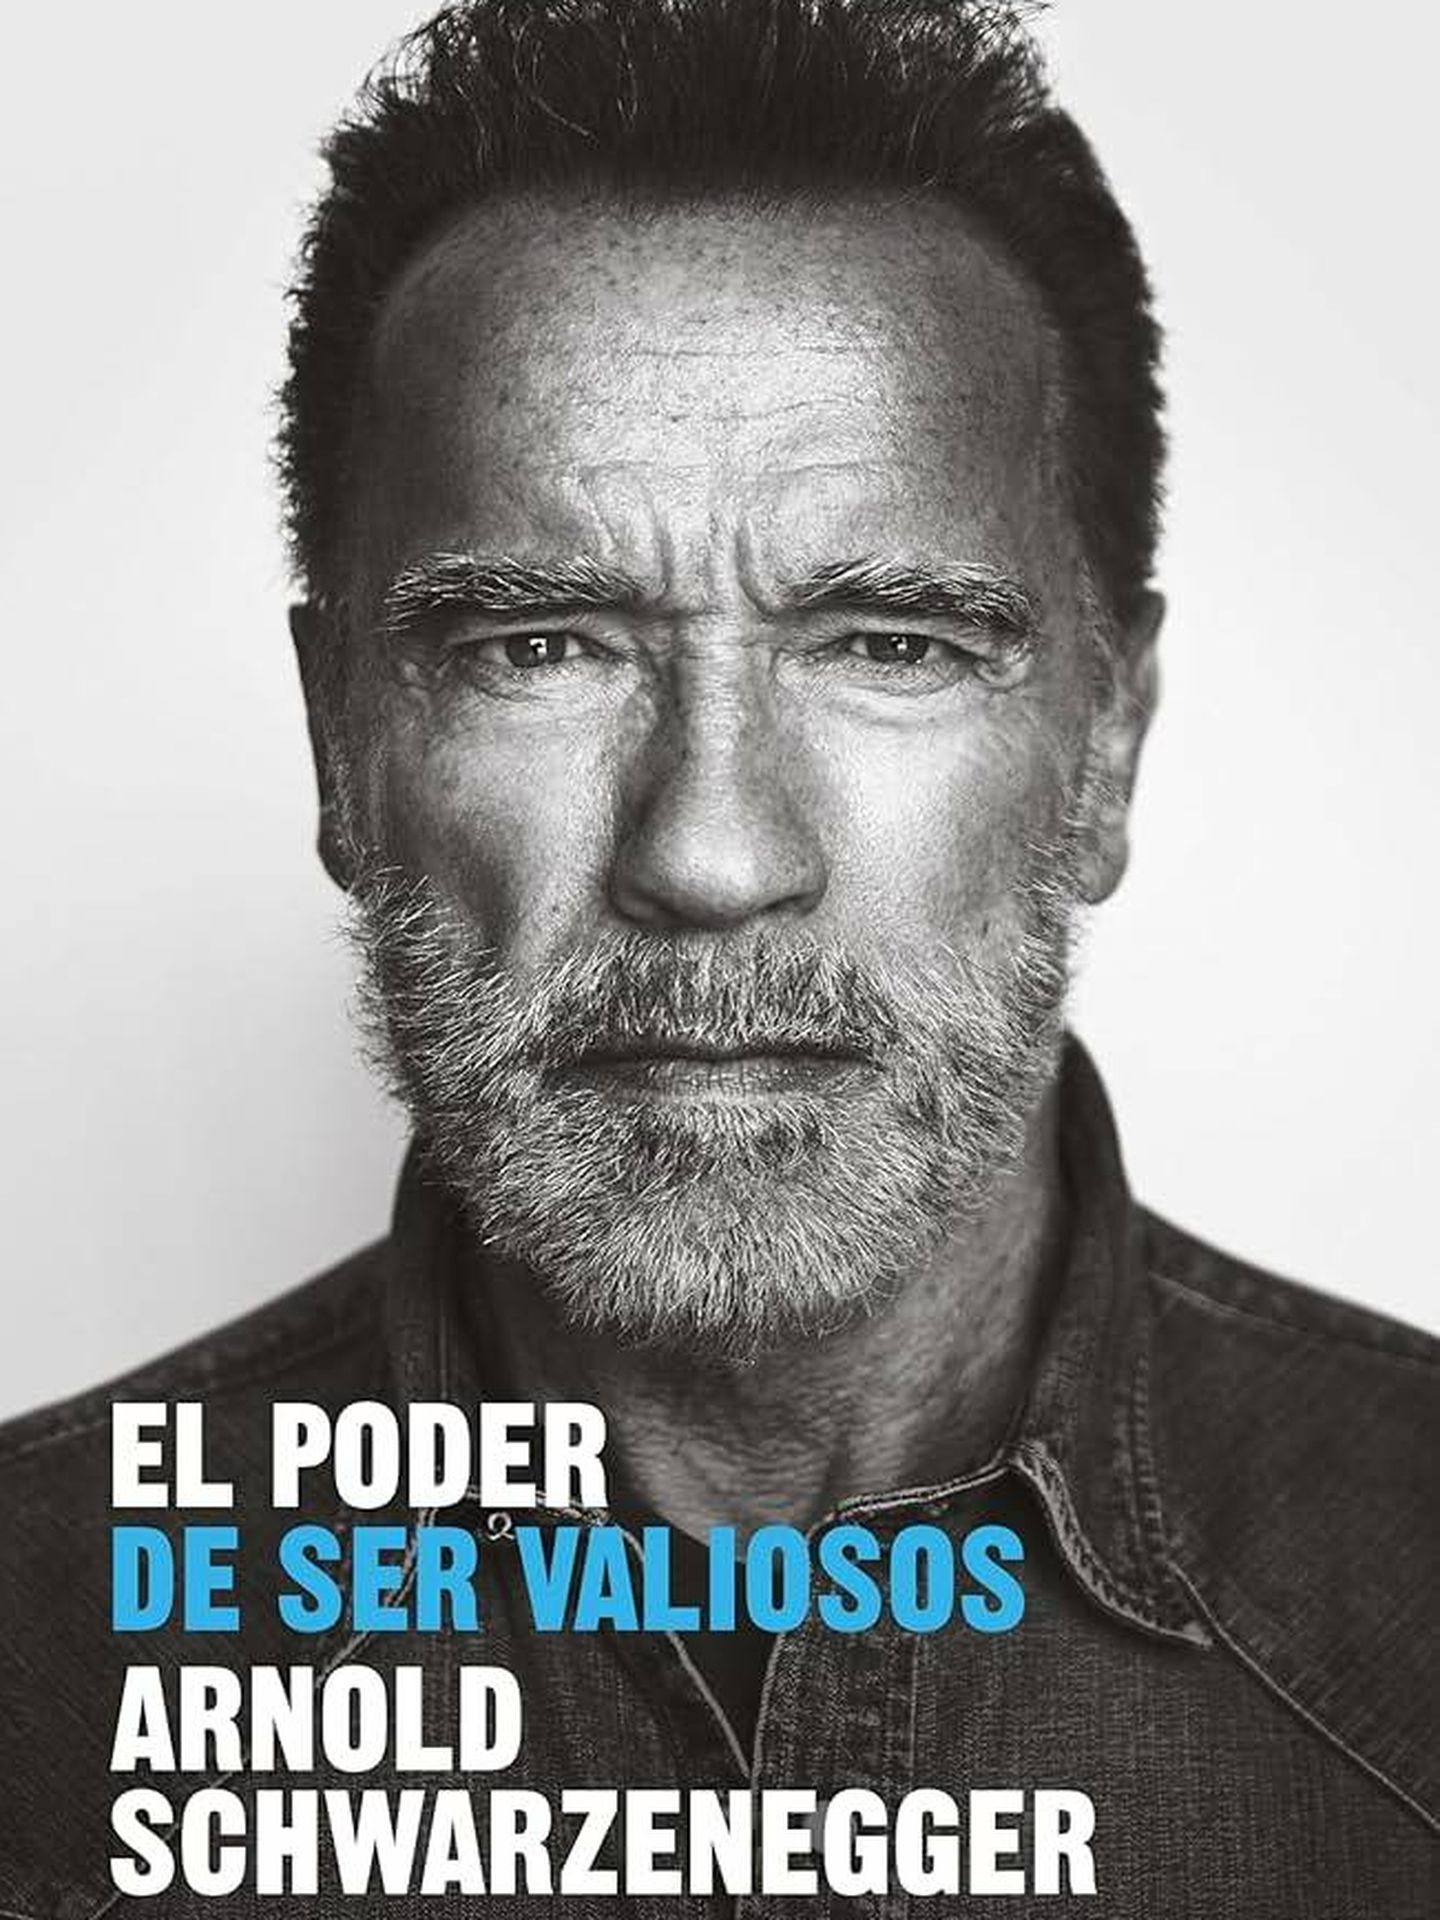 Portada de 'El poder de ser valiosos', el libro de autoayuda de Arnold Schwarzenegger.